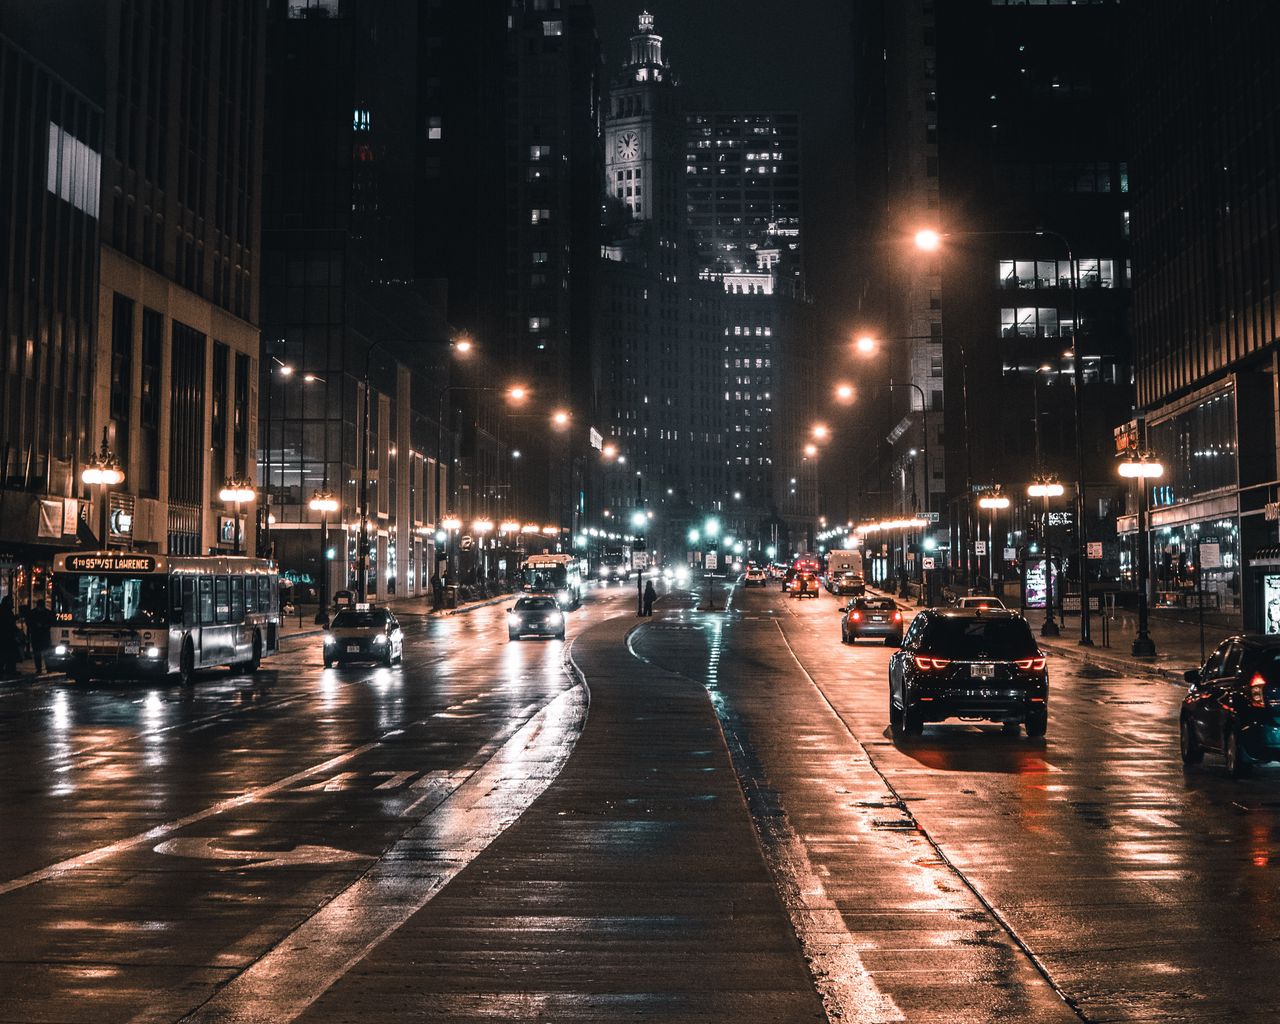 Tải hình nền đêm thành phố: Đêm thành phố rực rỡ và lung linh sẽ khiến bạn liên tưởng đến một thế giới đầy bất ngờ và kỳ diệu. Tải hình nền thành phố đêm này để thật sự hiểu được sức hút của thành phố khi lấp lánh về đêm.